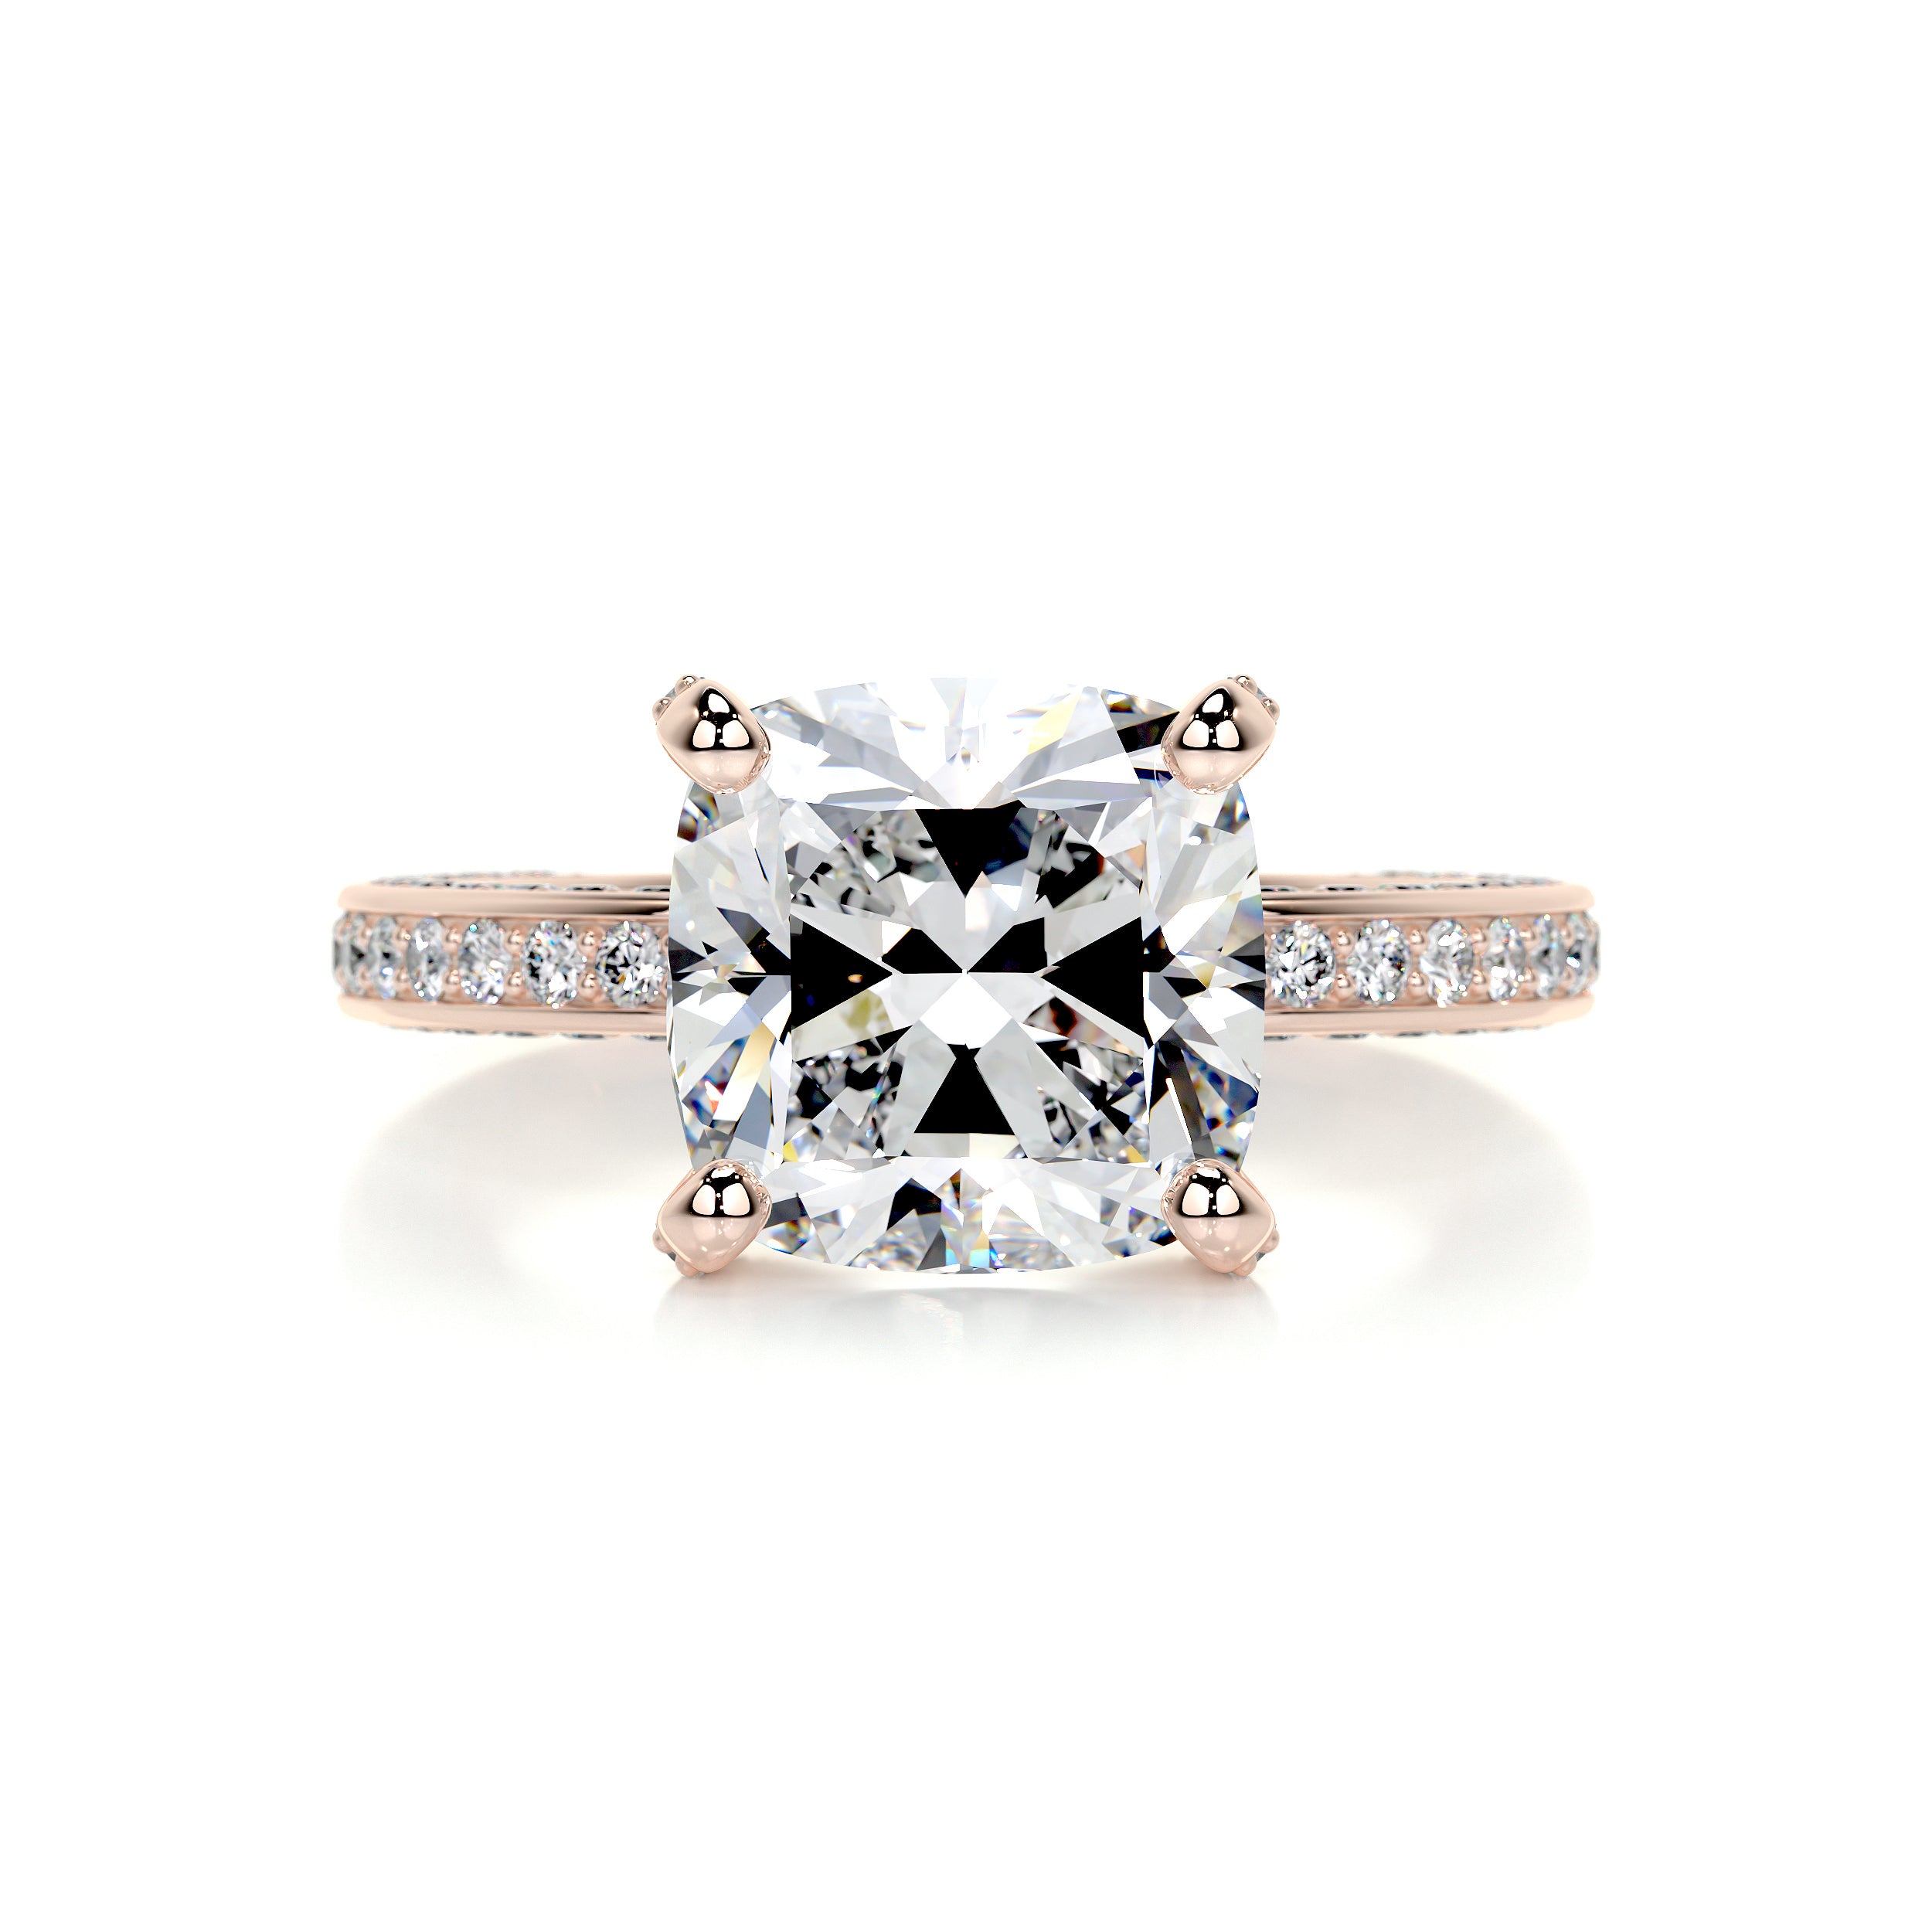 Lyric Diamond Engagement Ring   (2.75 Carat) -14K Rose Gold